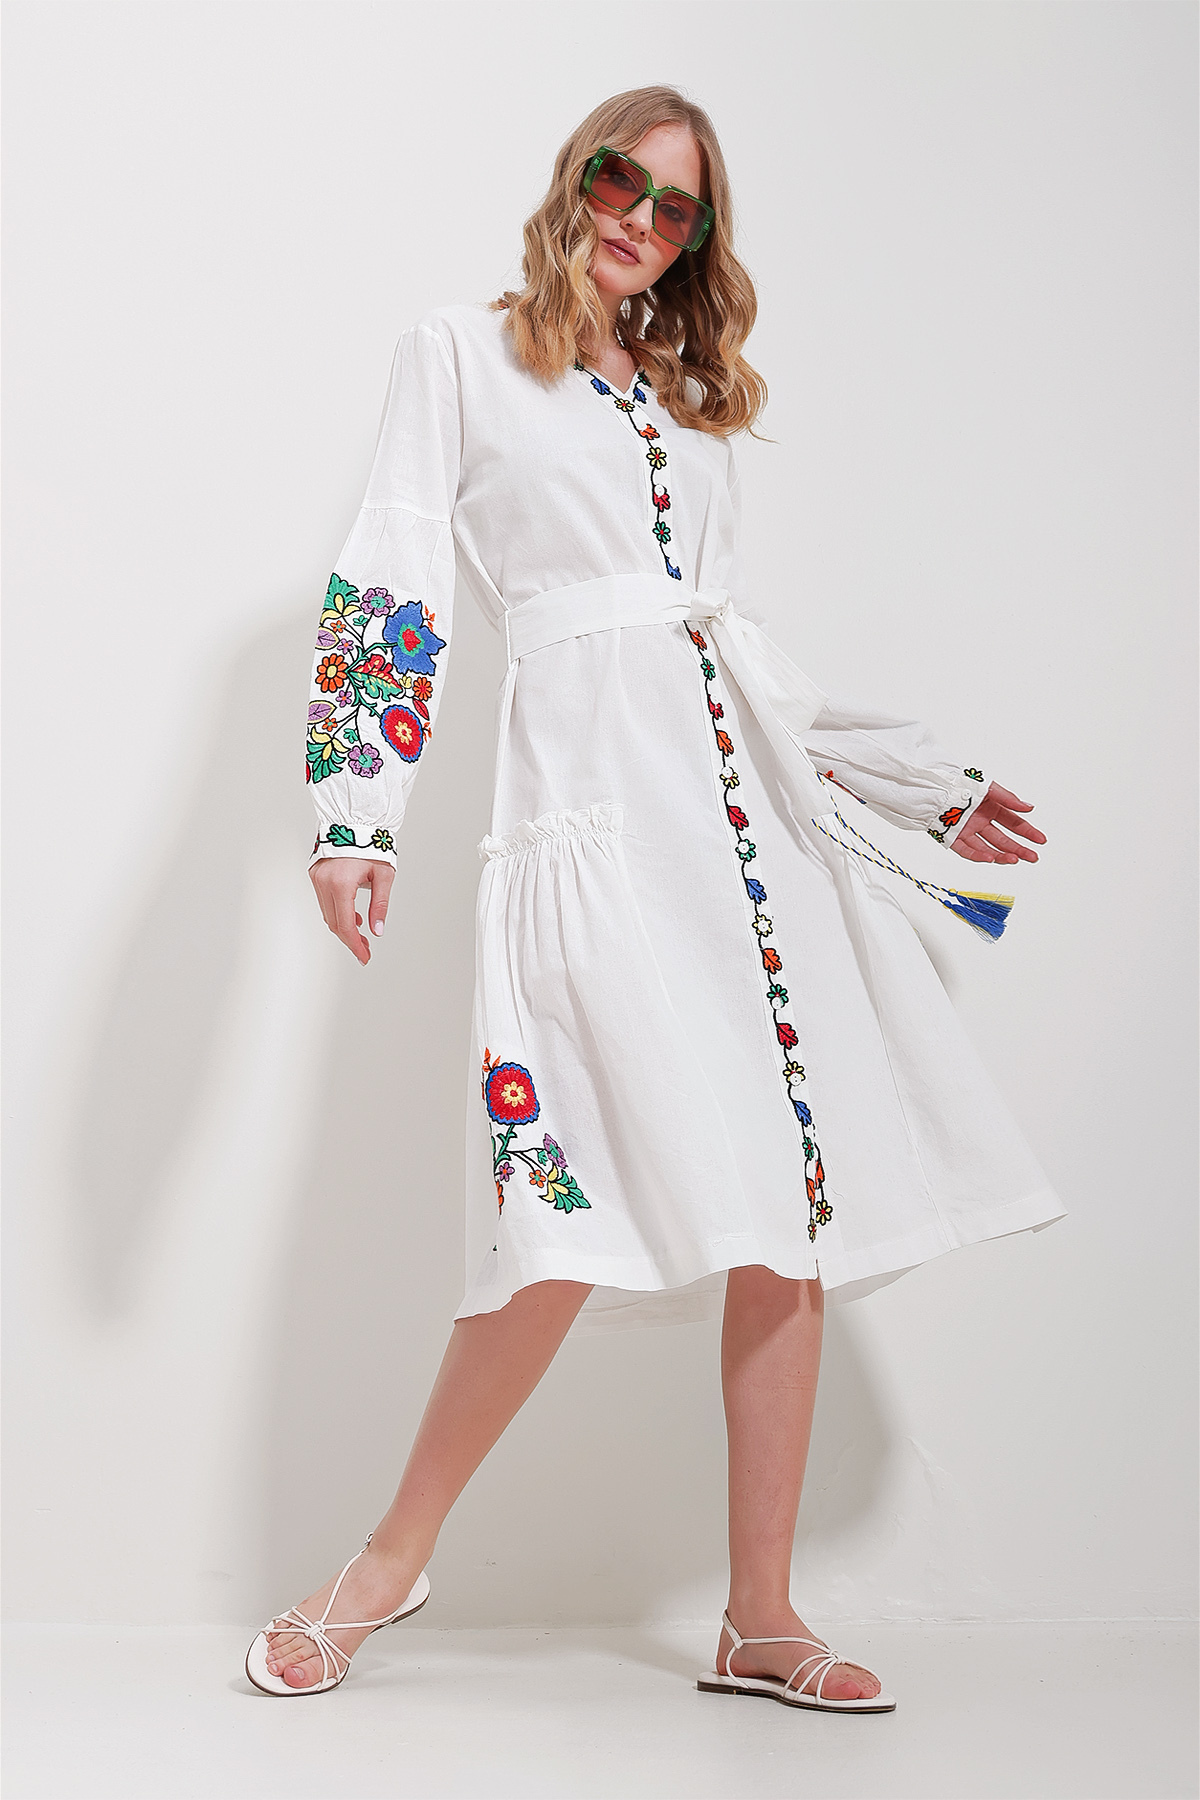 Levně Trend Alaçatı Stili Women's White V Neck Full Embroidery Lined Woven Dress